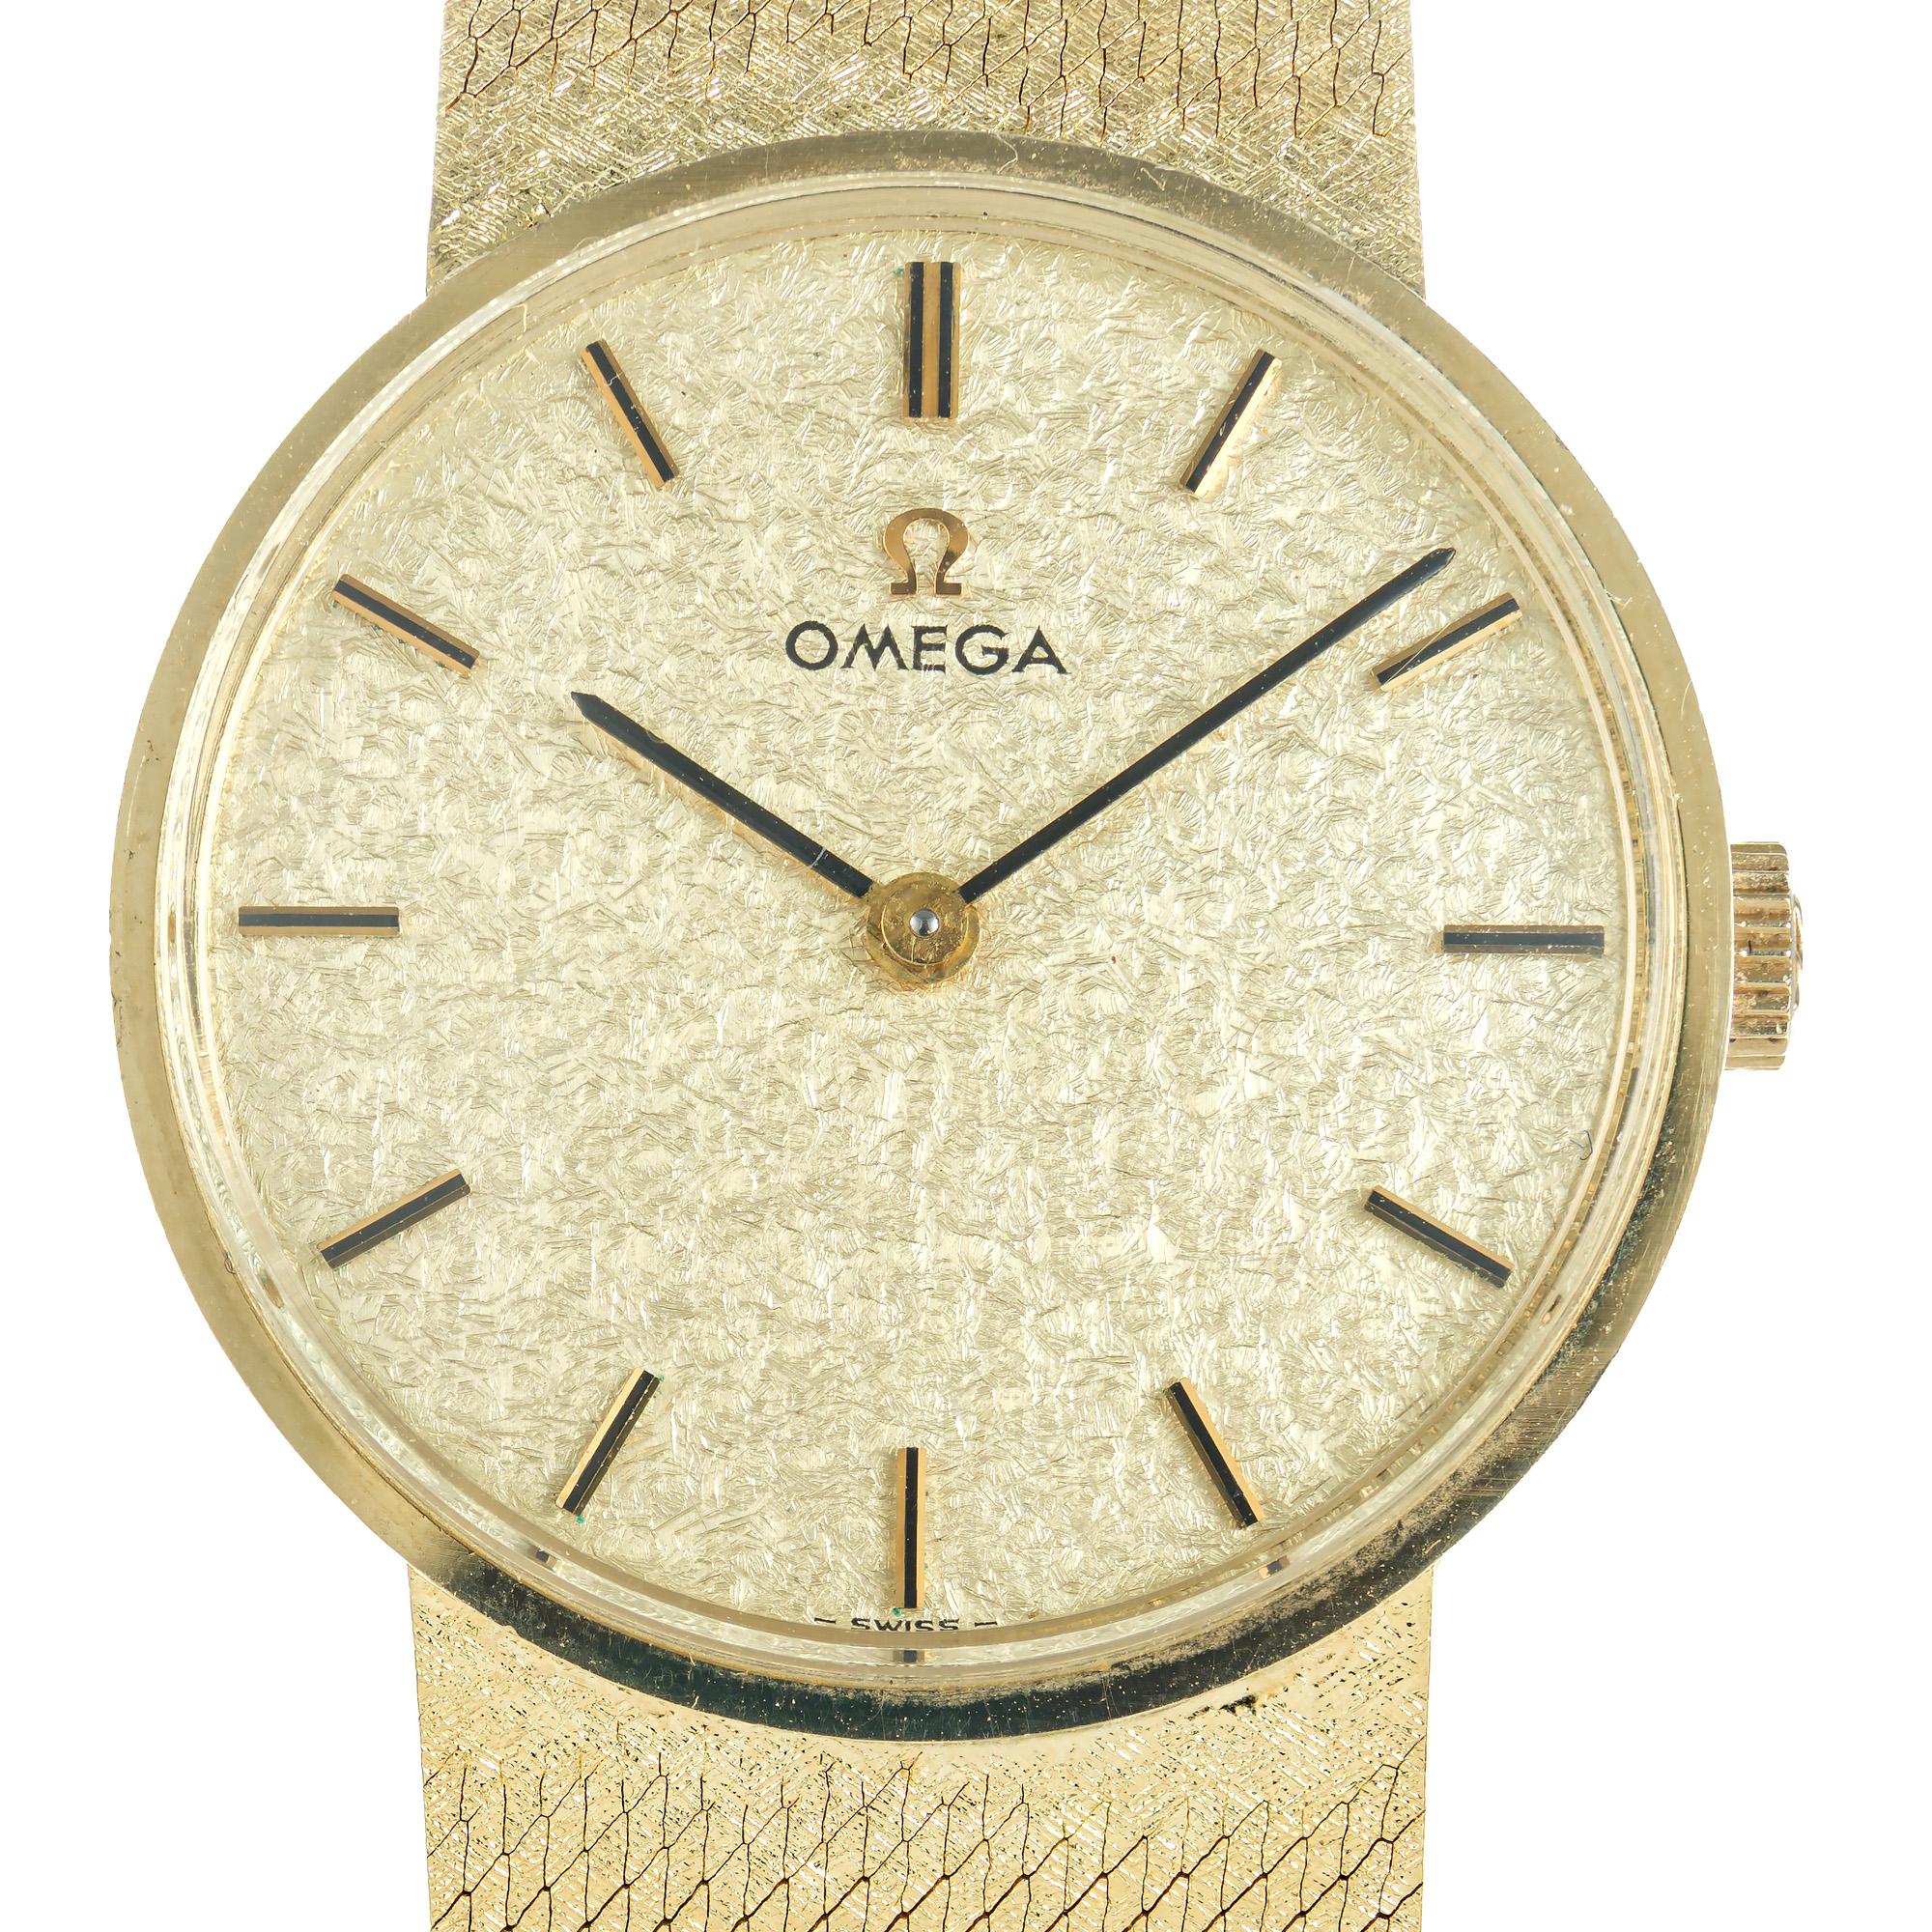 Montre-bracelet Omega vintage unisexe des années 1960. Montre-bracelet élégante du milieu du siècle en or jaune 14k à lunette ronde, complétée par un magnifique bracelet en maille de 7,25 pouces assorti au cadran. Style vintage classique des années